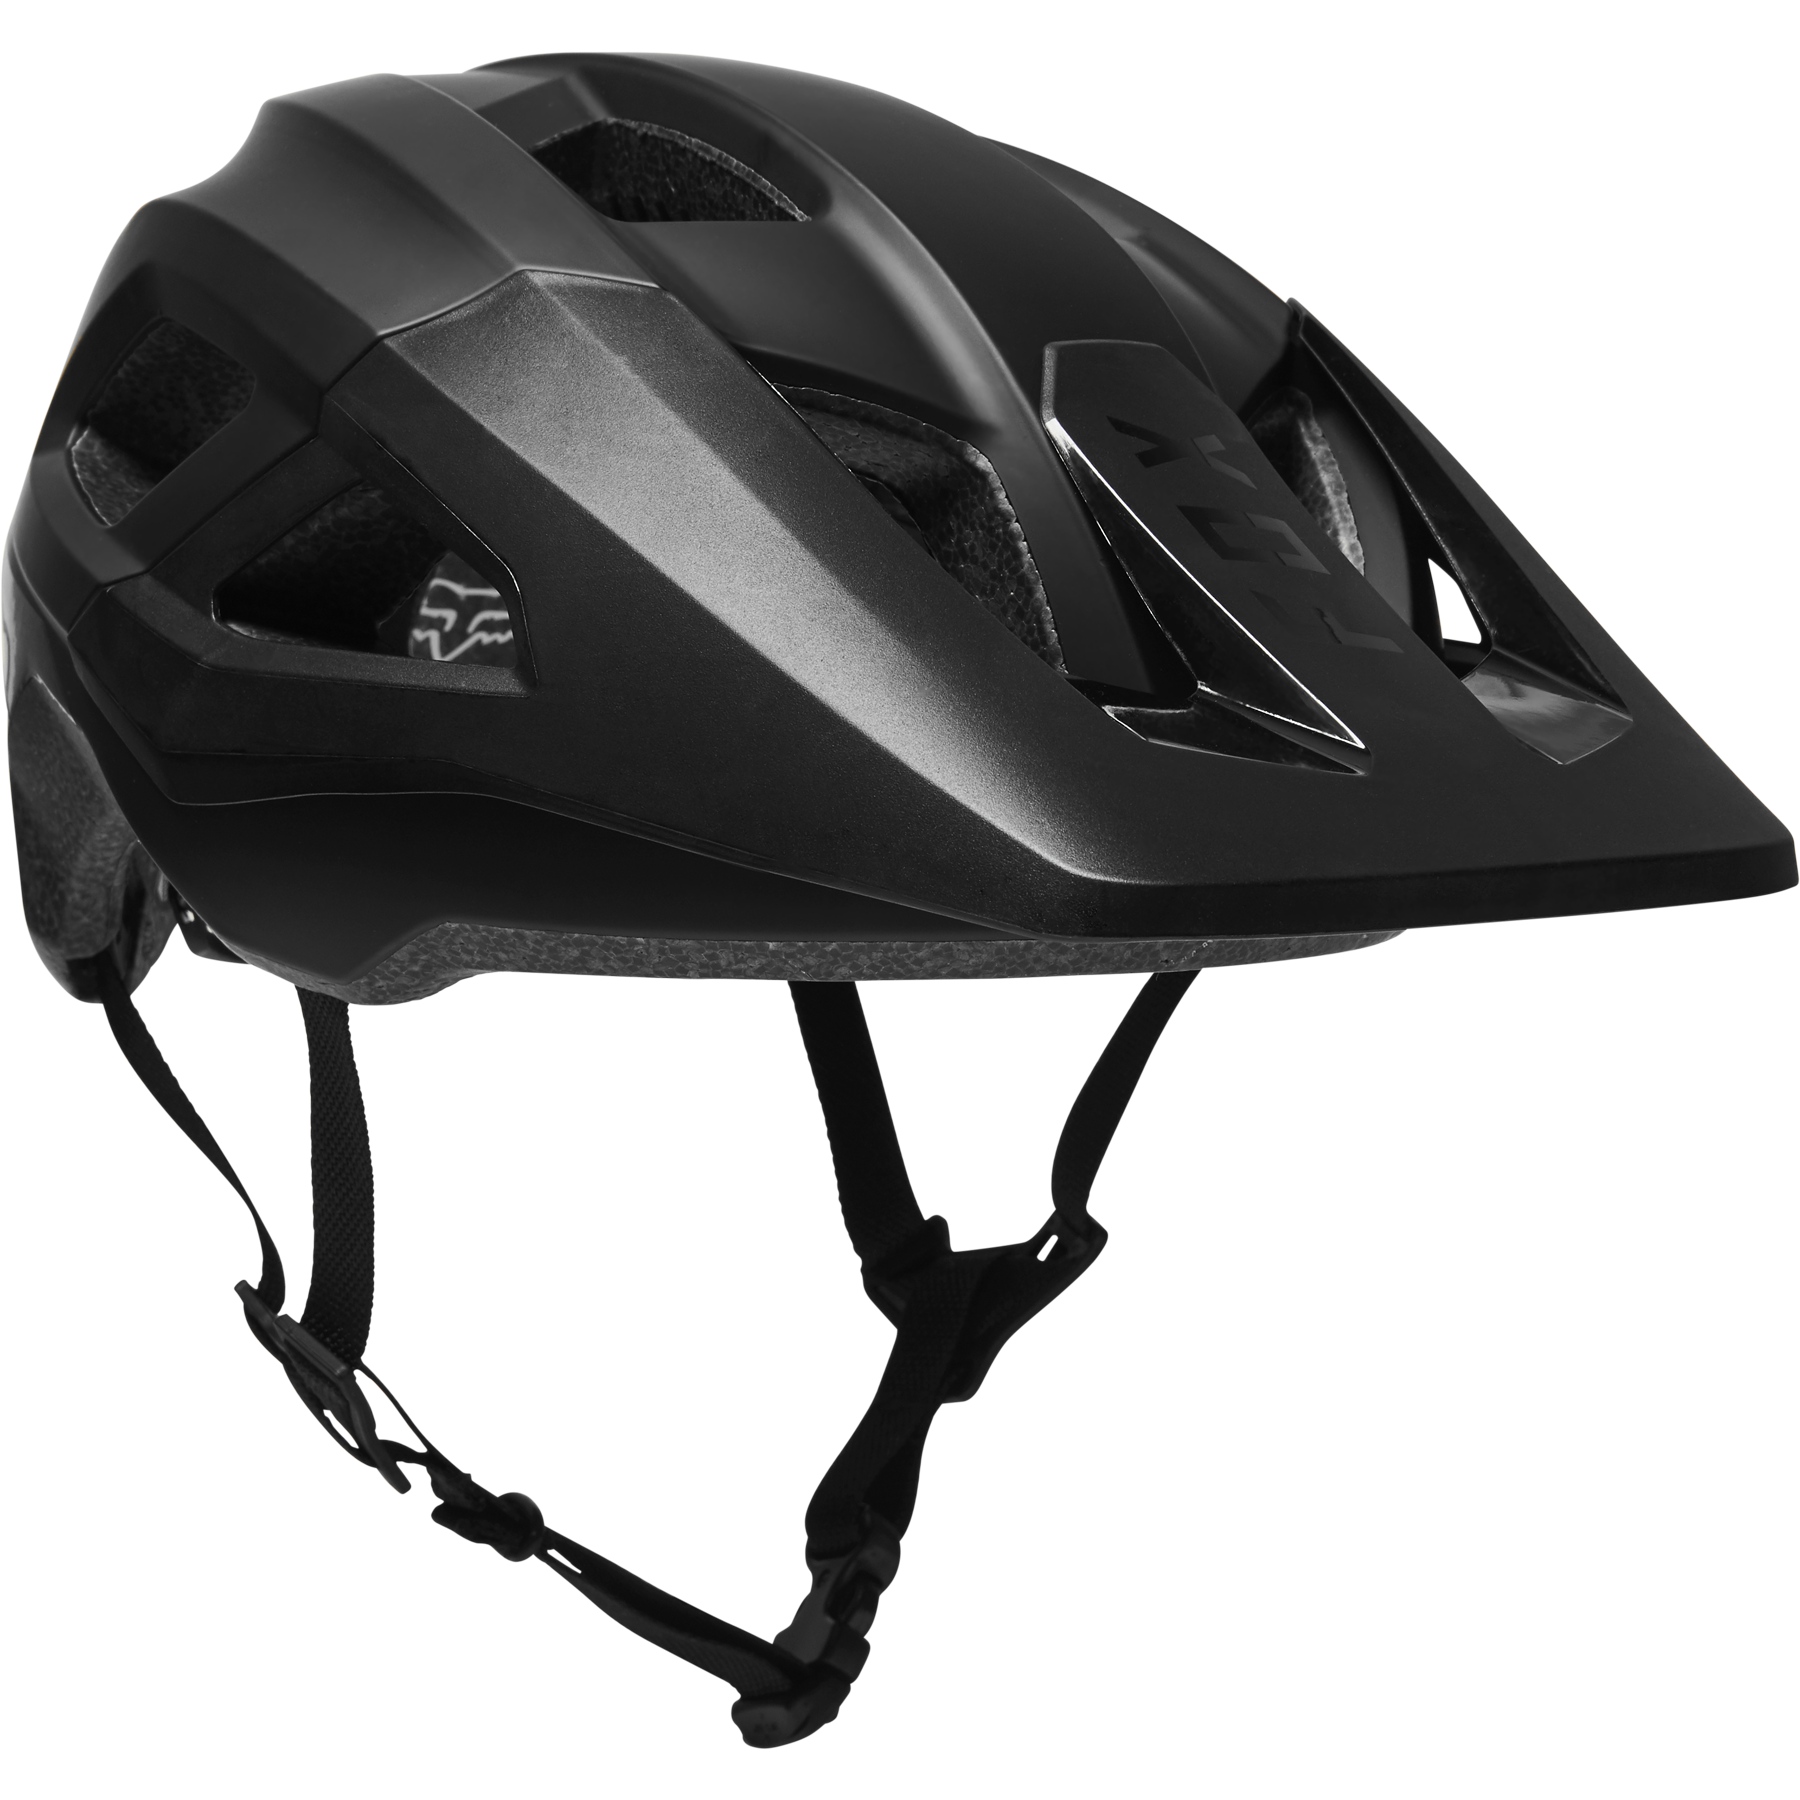 Produktbild von FOX Mainframe MIPS Trail Helm - Trvrs - schwarz/schwarz